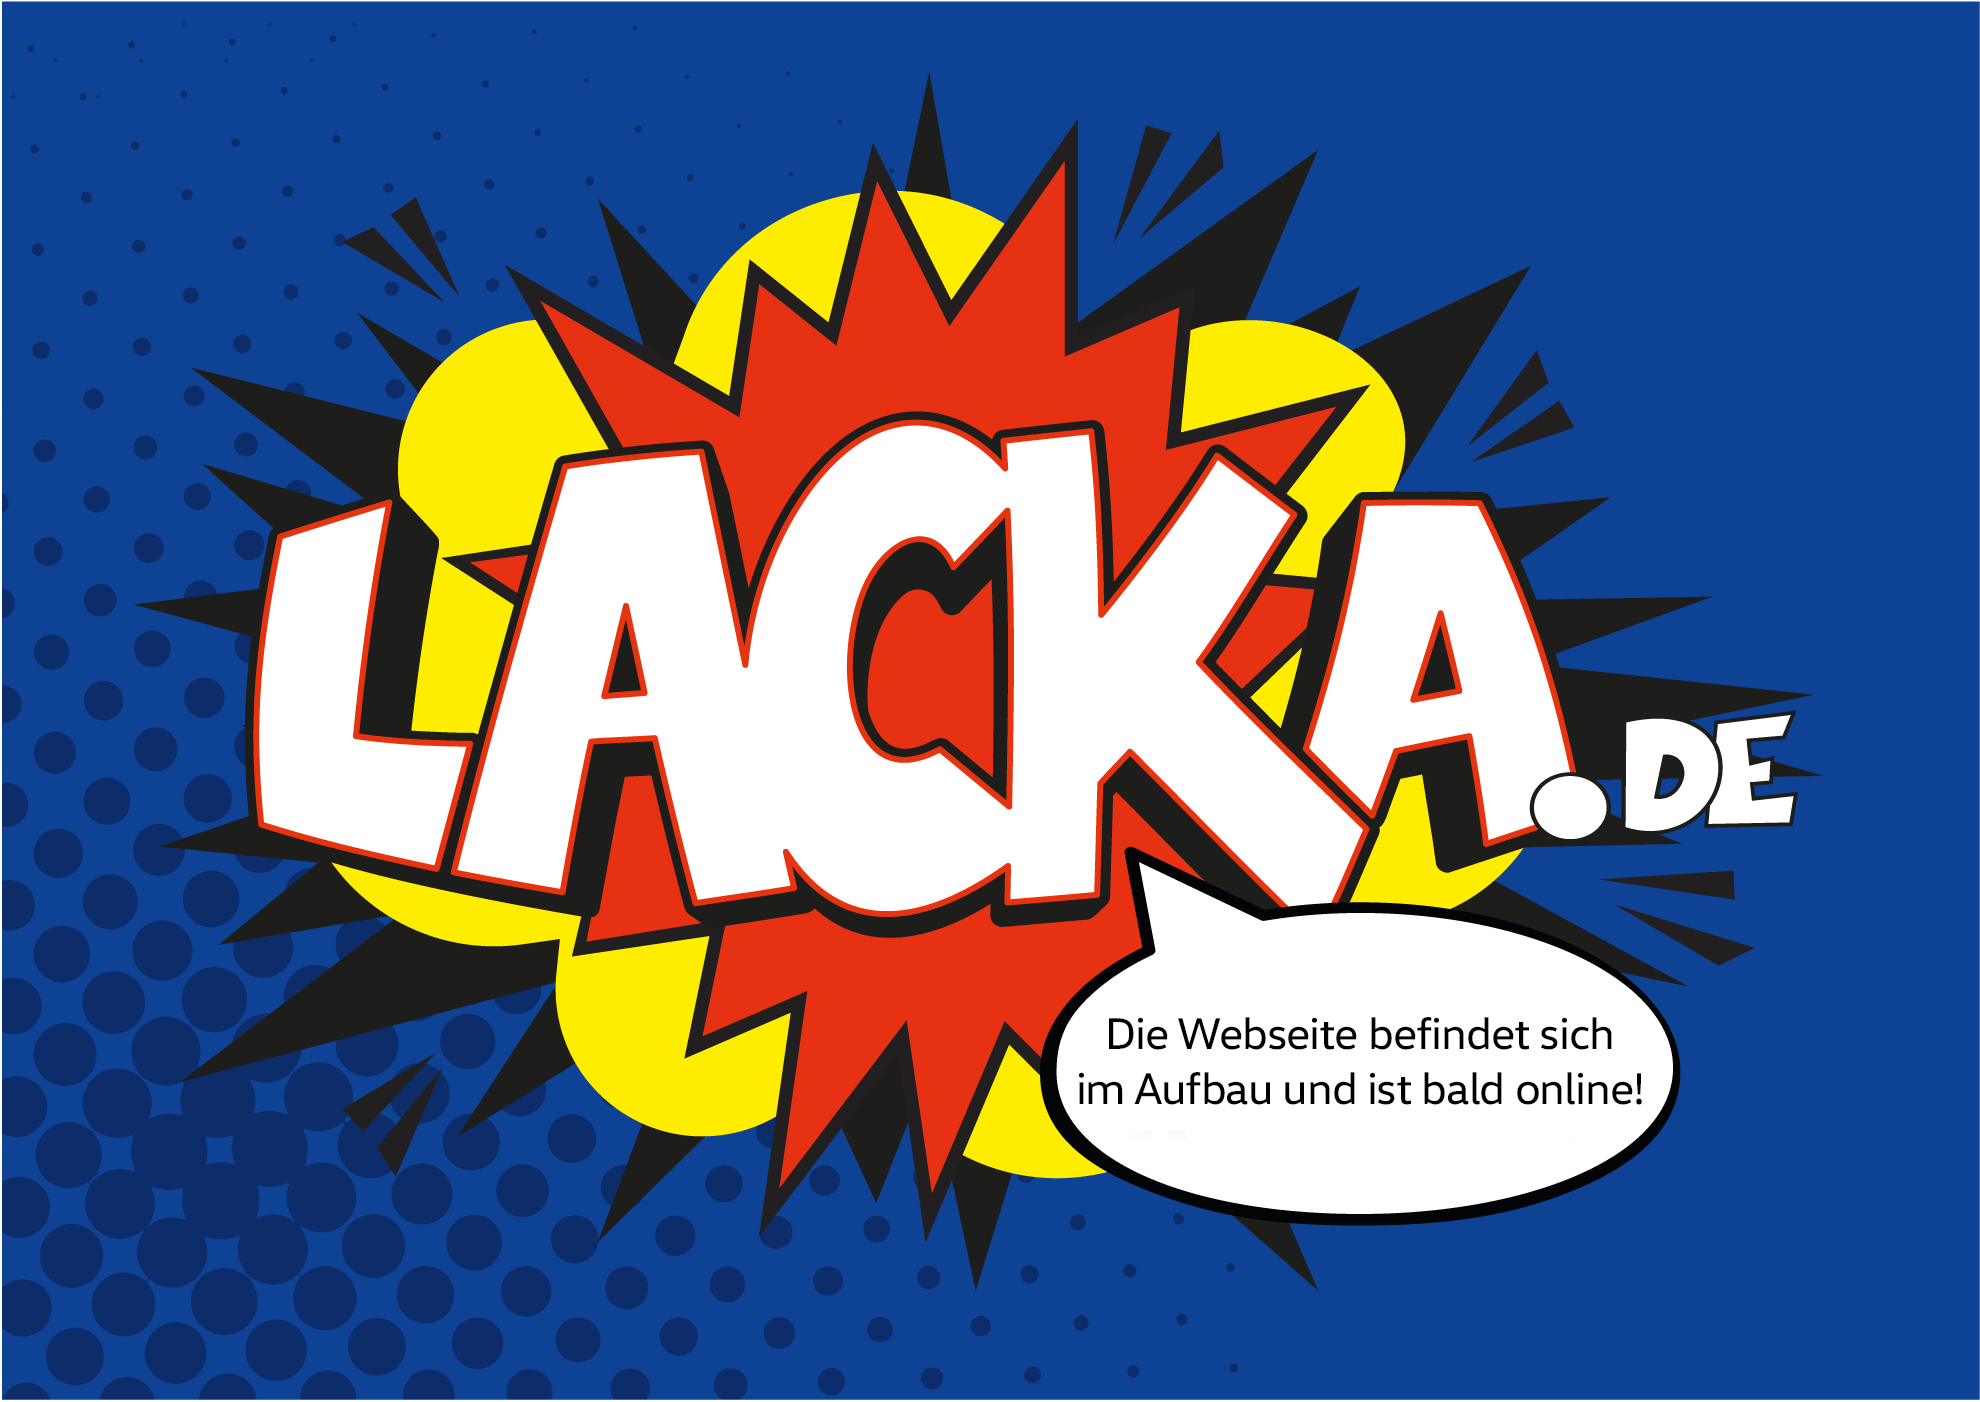 lacka.de